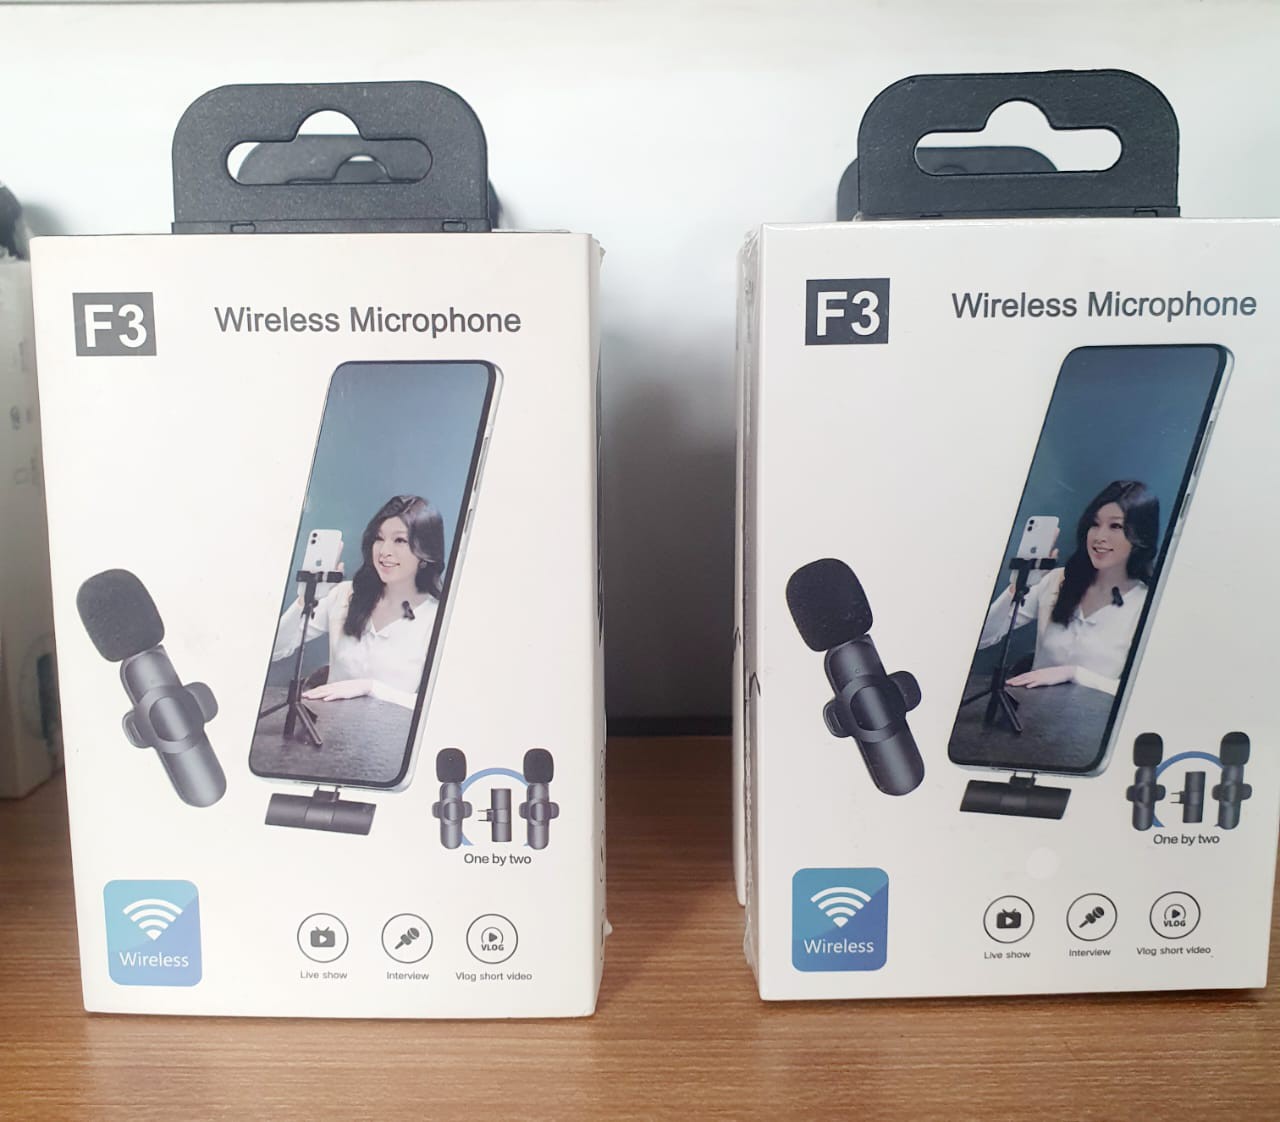 ໄມໂຄໂຟນໄຮ້ສາຍ Wireless Microphone F3, ສຳລັບ live ສົດແລະອັດວີດີໂອ, ໃຊ້ໄດ້ທັງລຳໂພງແລະໂທລະສັບມືຖື.